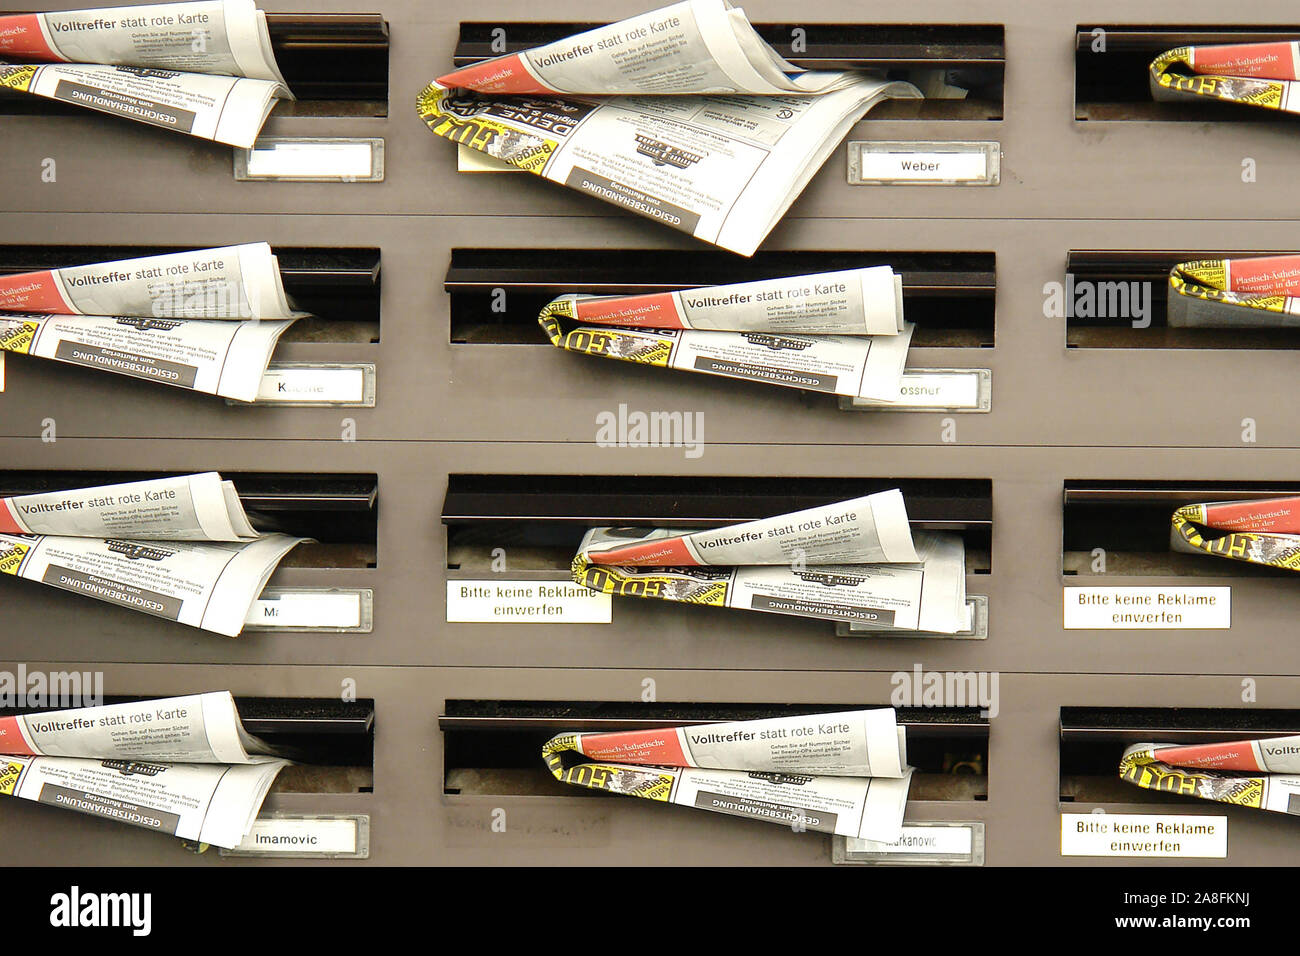 Briefkasten voll mit Zeitungswerbung, Briefkästen, Sonntagszeitung, Gratis, Stock Photo